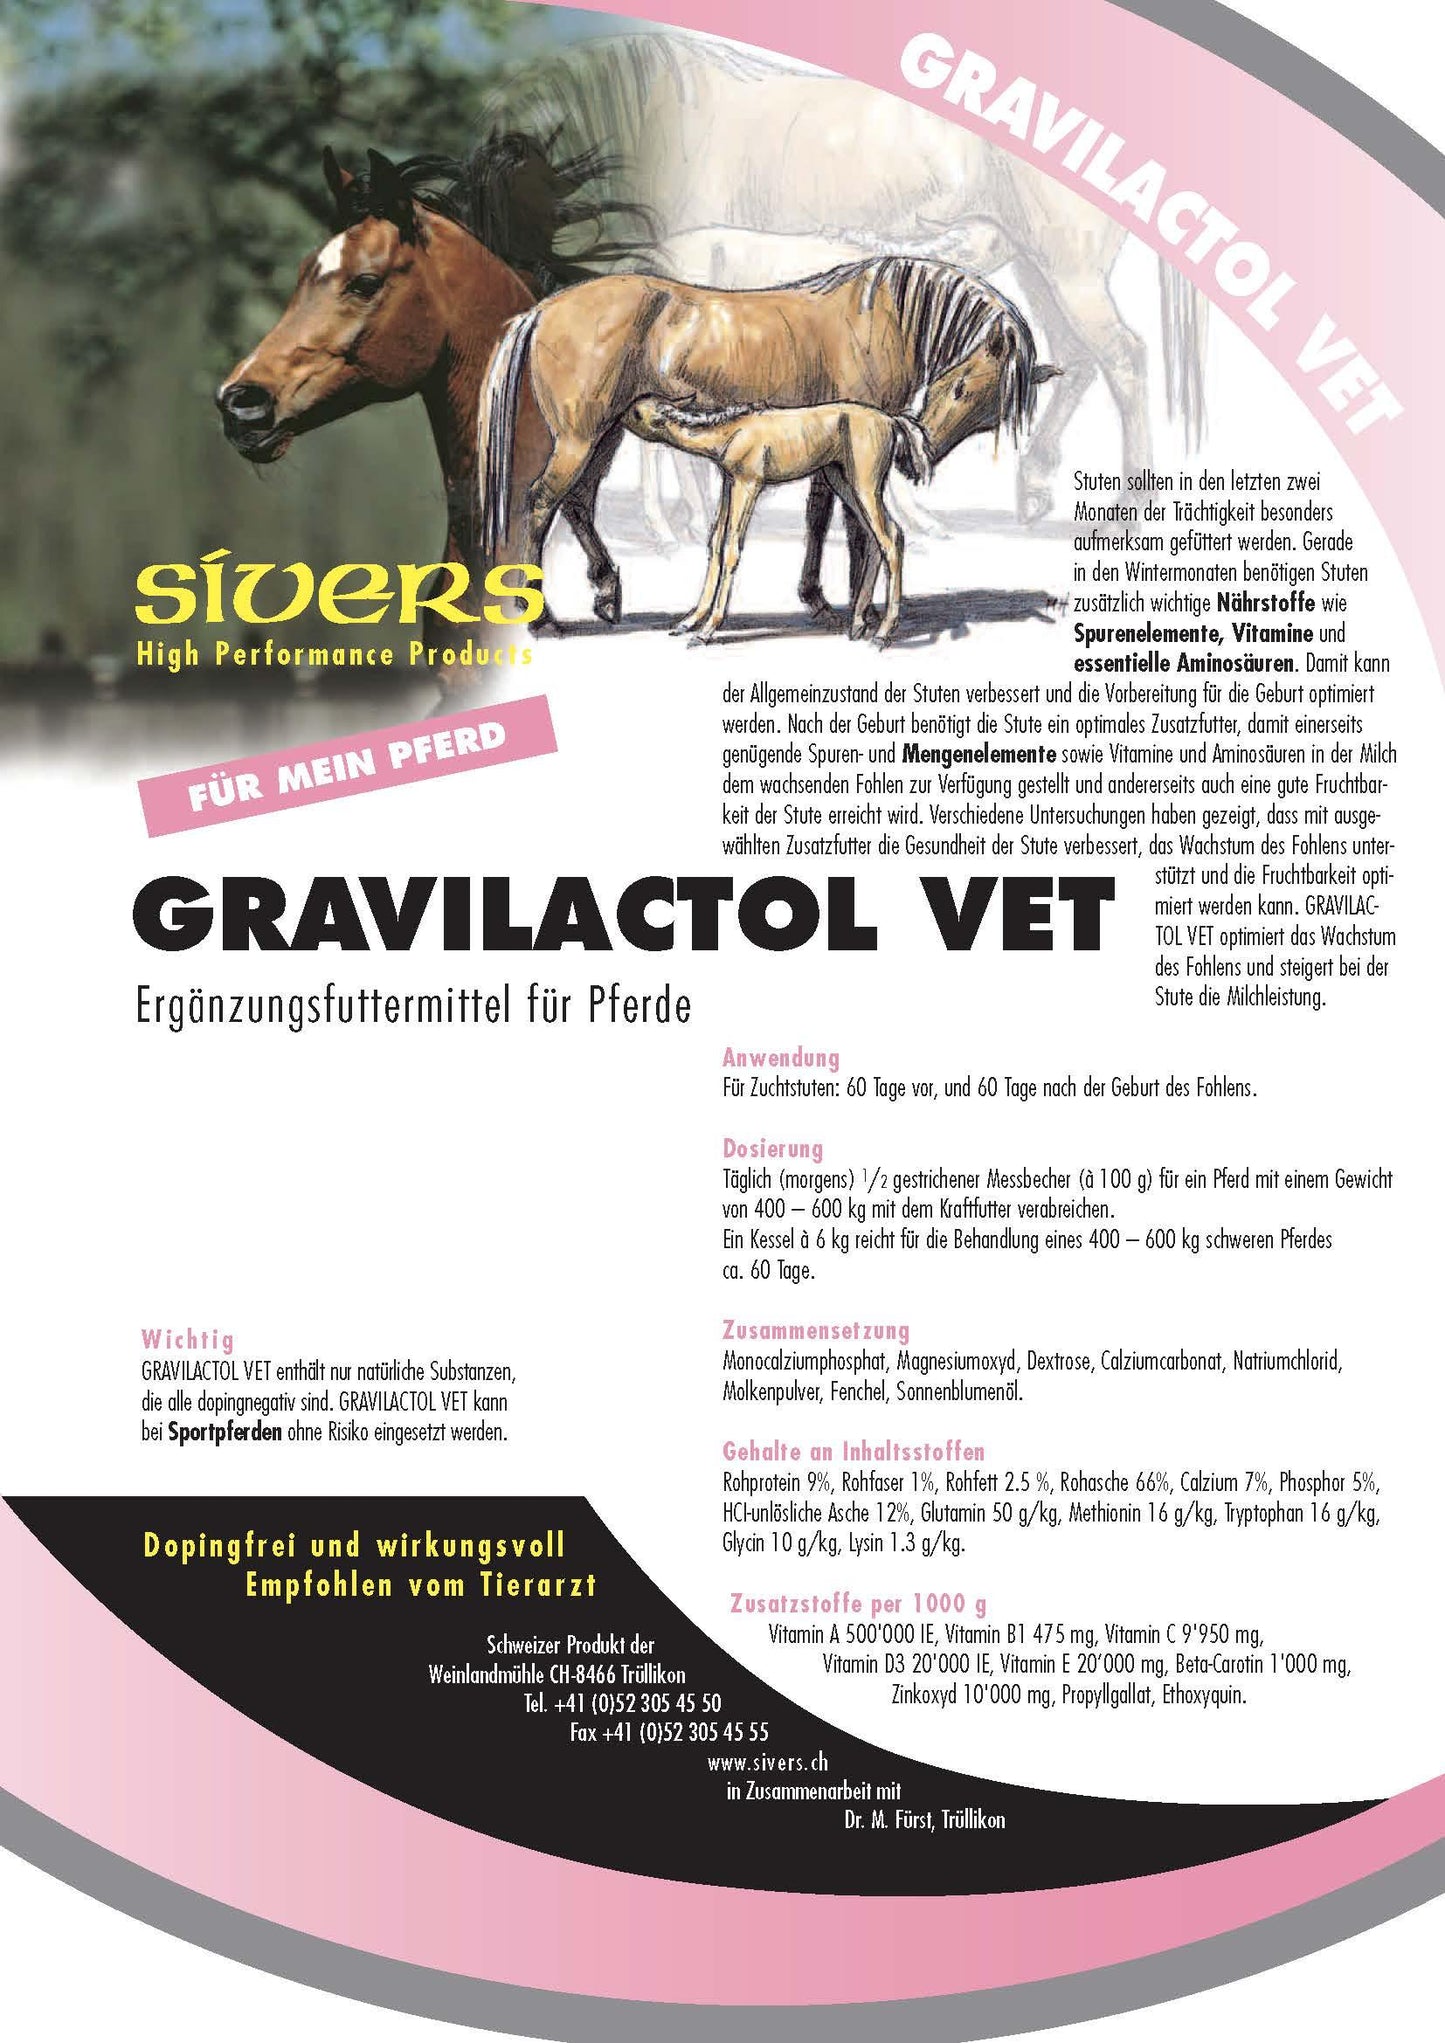 Gravilactol Vet - Sivers - Darreichungsform:Pulver, Ergänzungsfuttermittel:Zucht & Aufzucht, Tierart:Pferd - Marigin AG Onlineshop für Tierbedarf